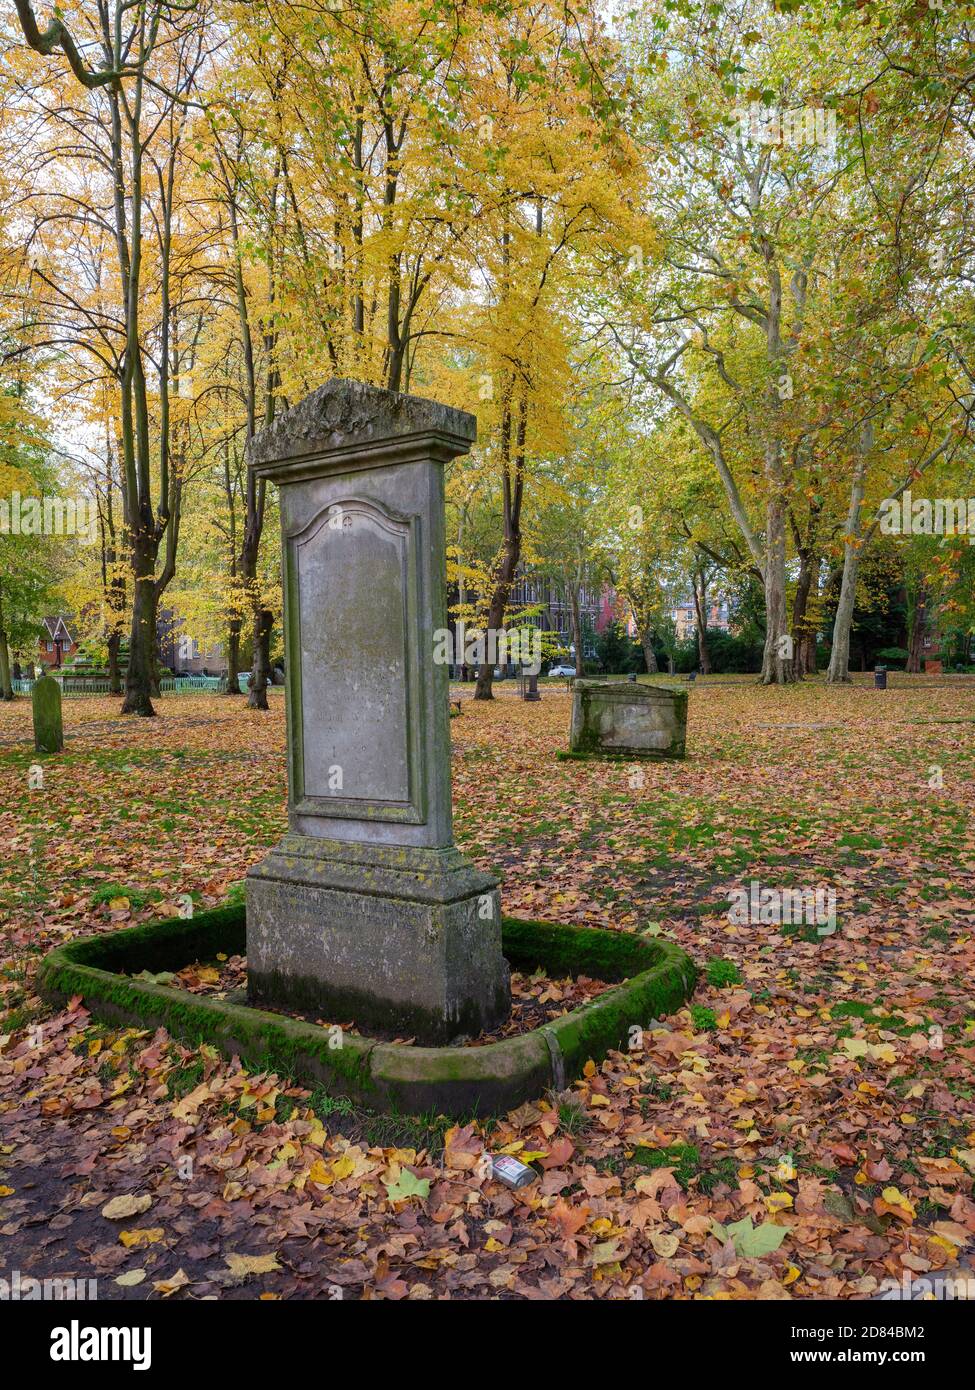 Londres en automne : profitez de la beauté des couleurs de l'automne, de l'exercice et de l'air frais au cimetière de la vieille église de St Pancras Banque D'Images